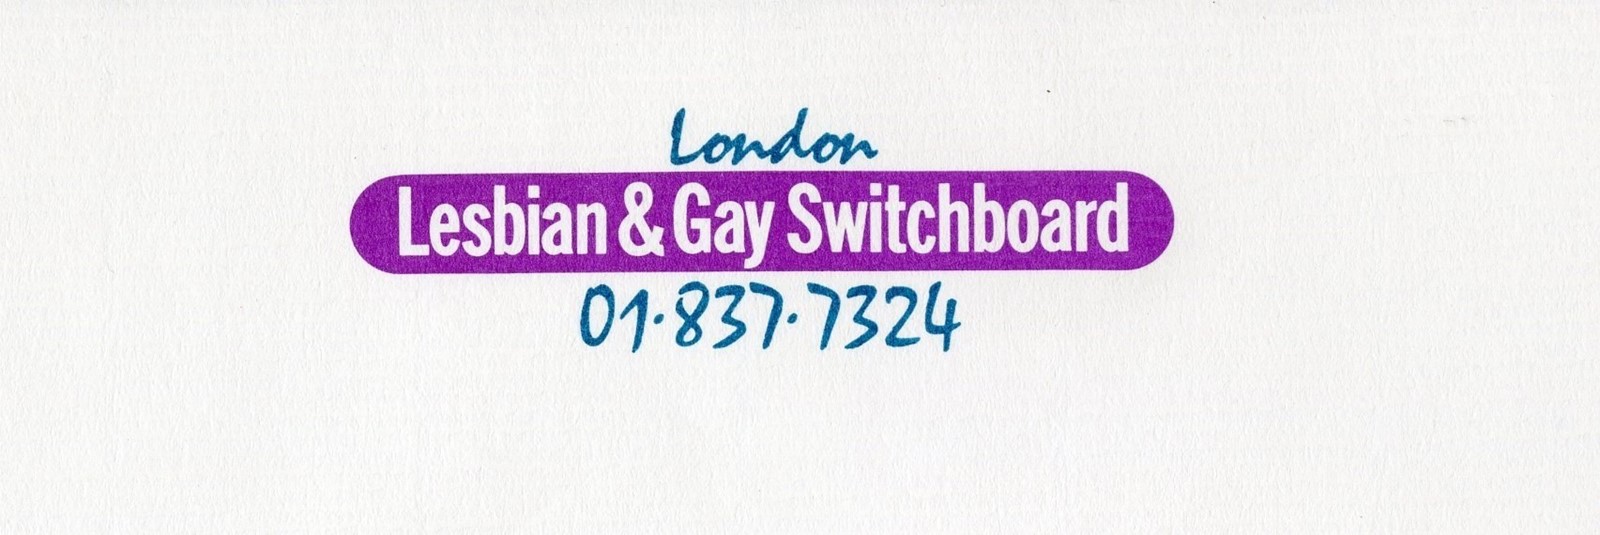 Switchboard LGBT+ helpline archive